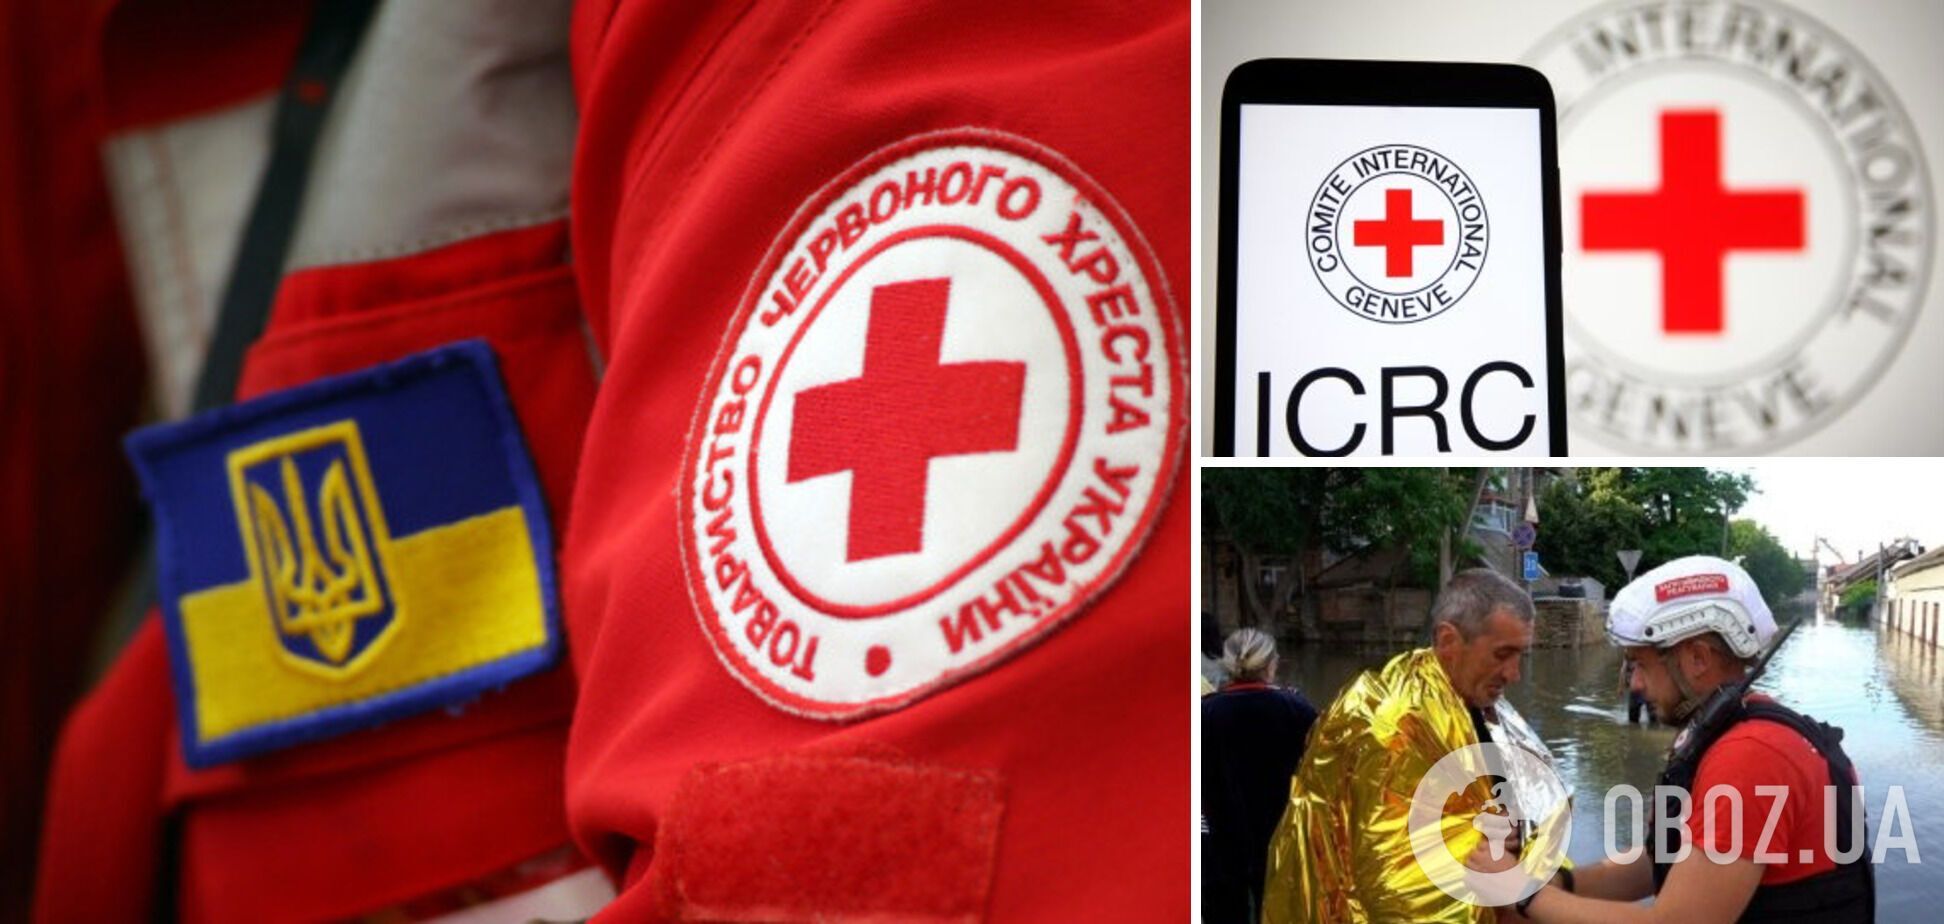 'Продолжаем работу 24/7': Красный Крест Украины попытался оправдаться после критики Зеленского за бездействие